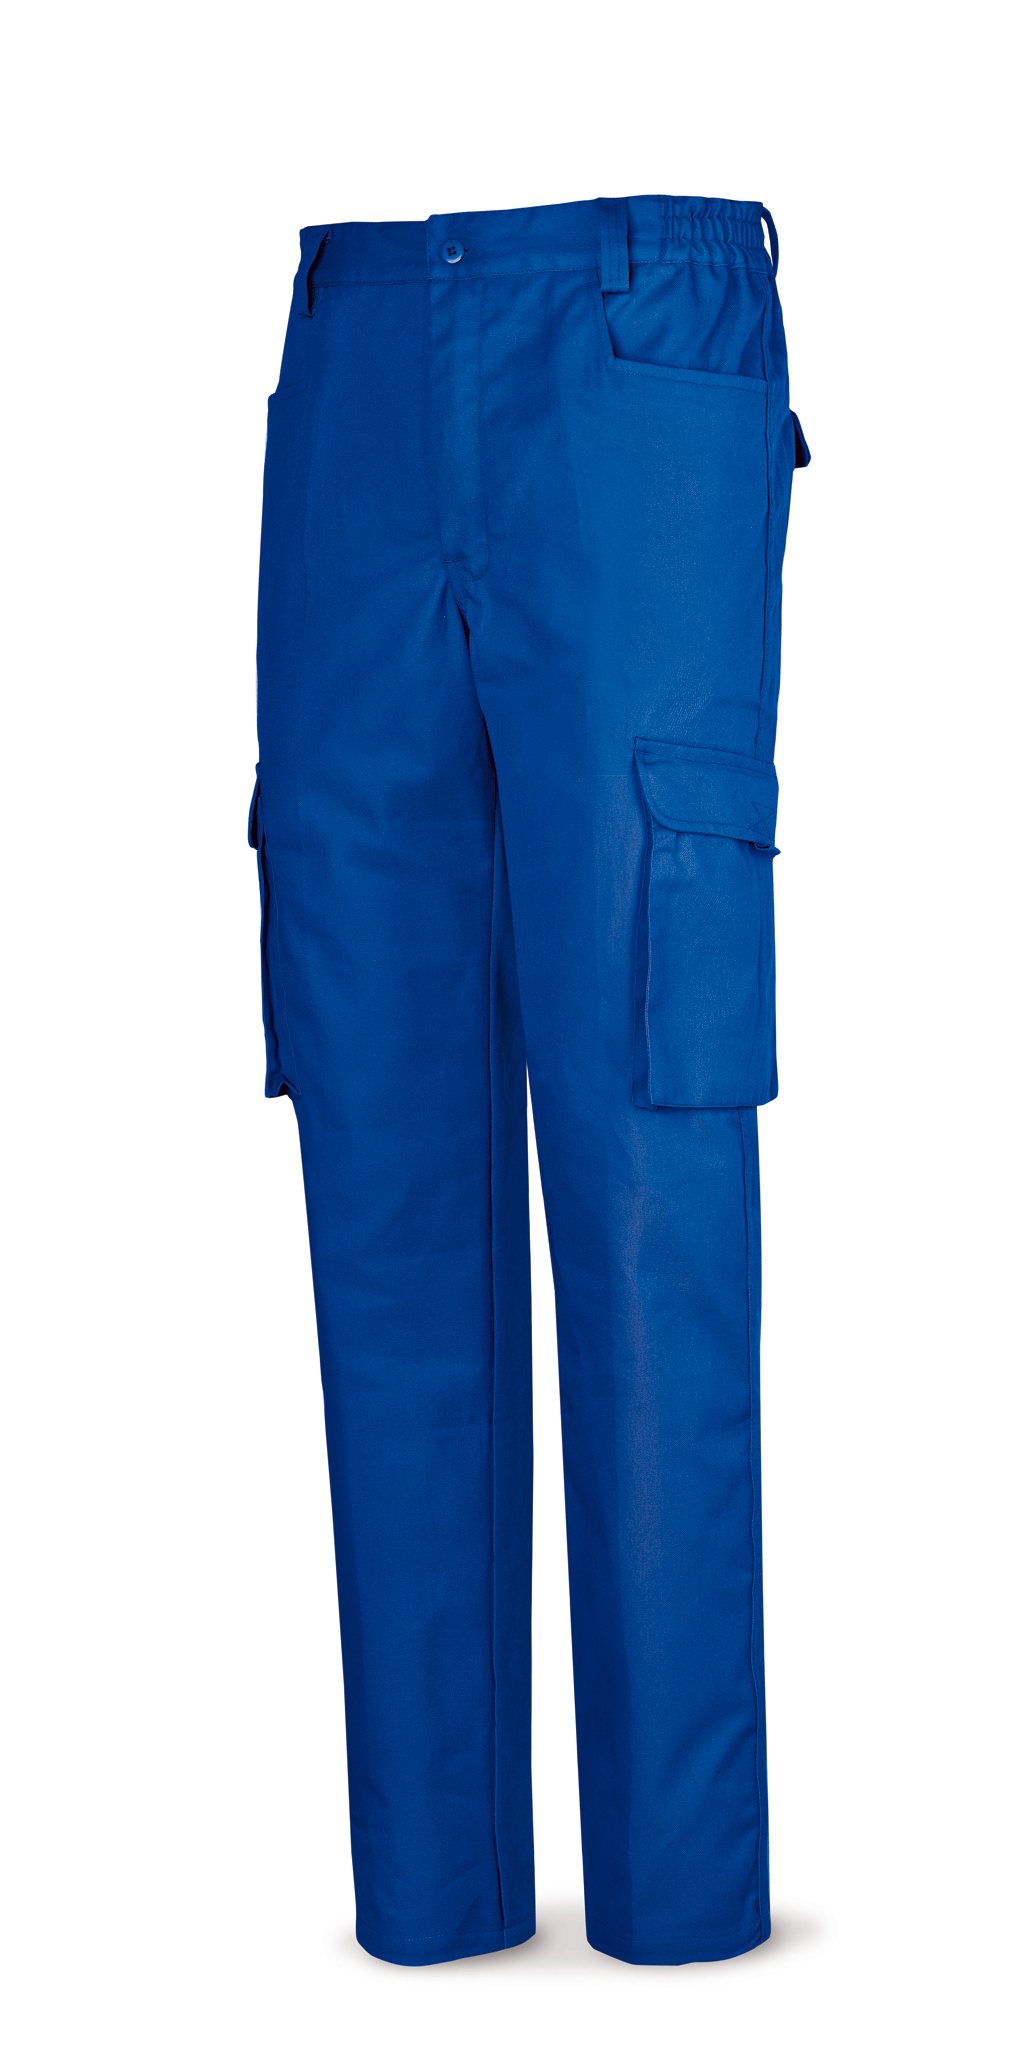 488-P Top Vestuario Laboral Serie Top Pantalón azulina algodón de 245 g. Multibolsillo